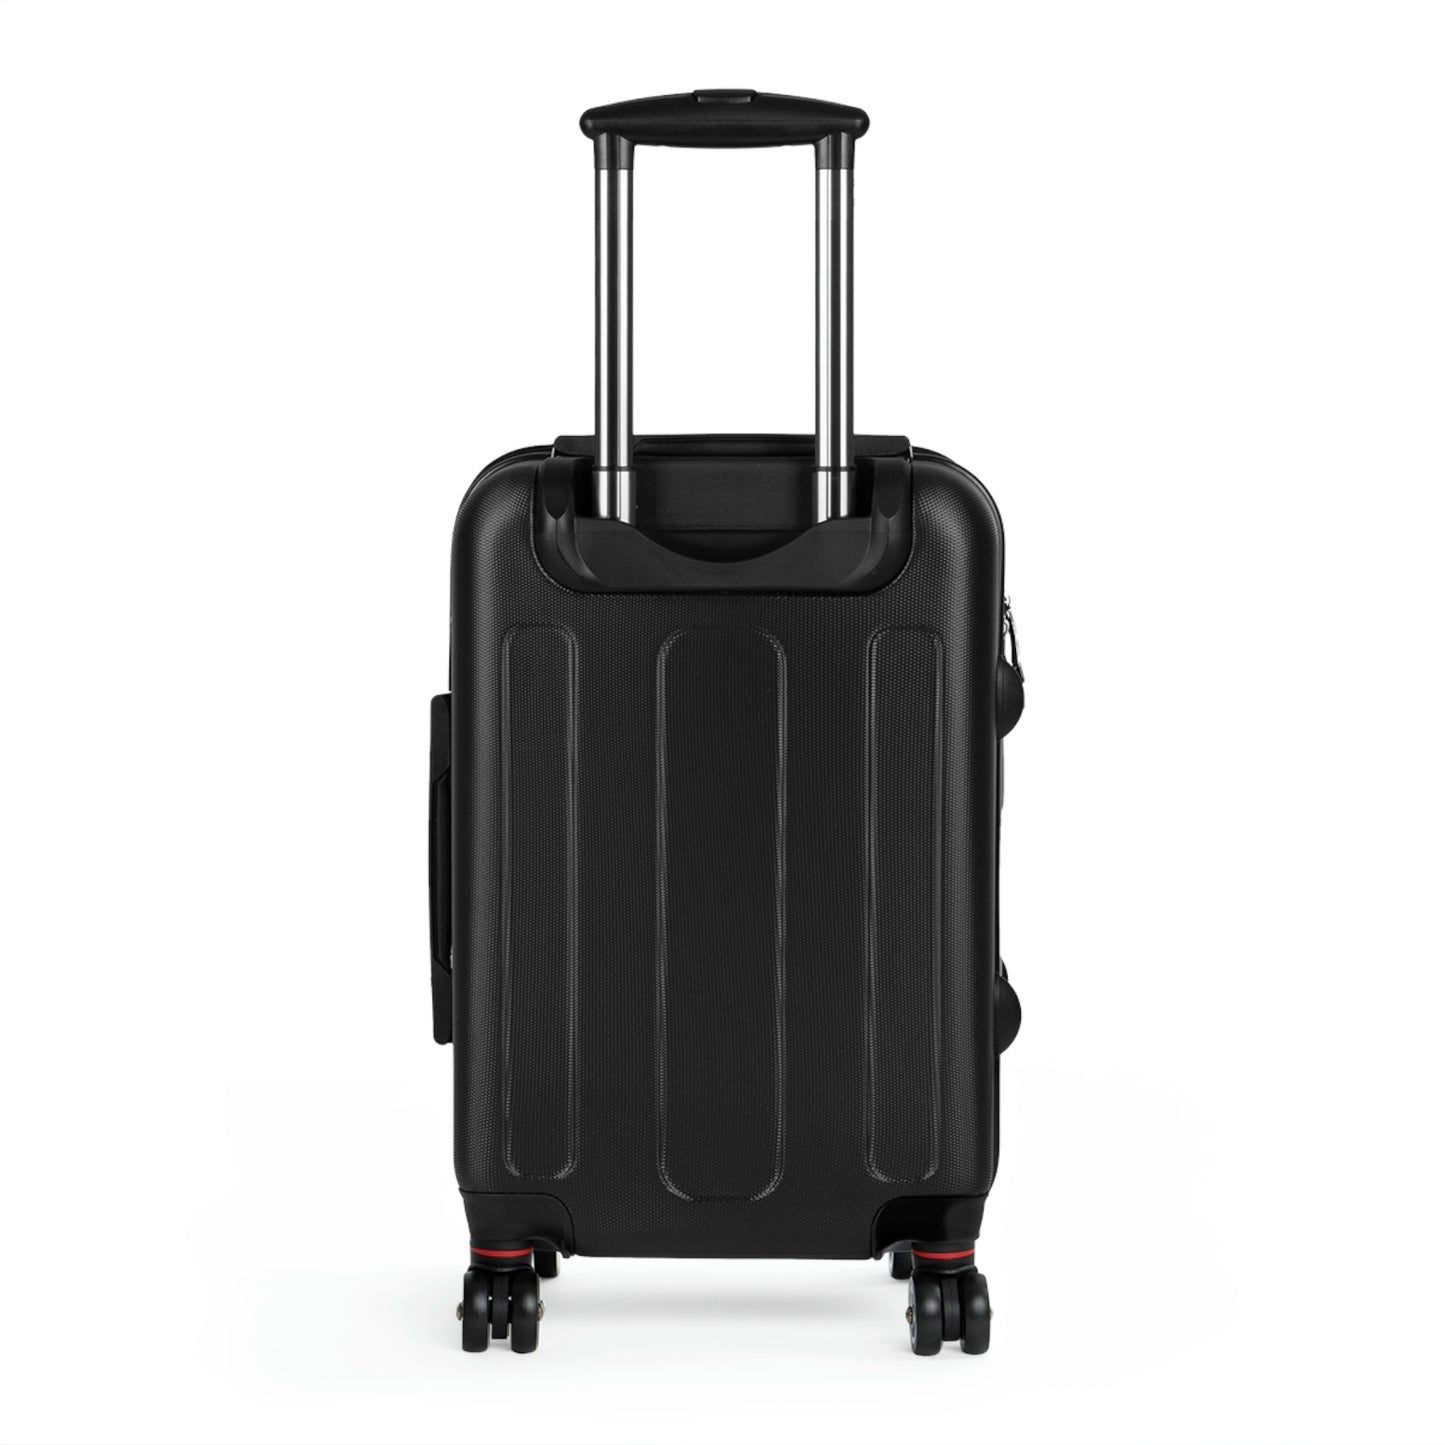 Salvation Delivered, Travel Unique Suitcase